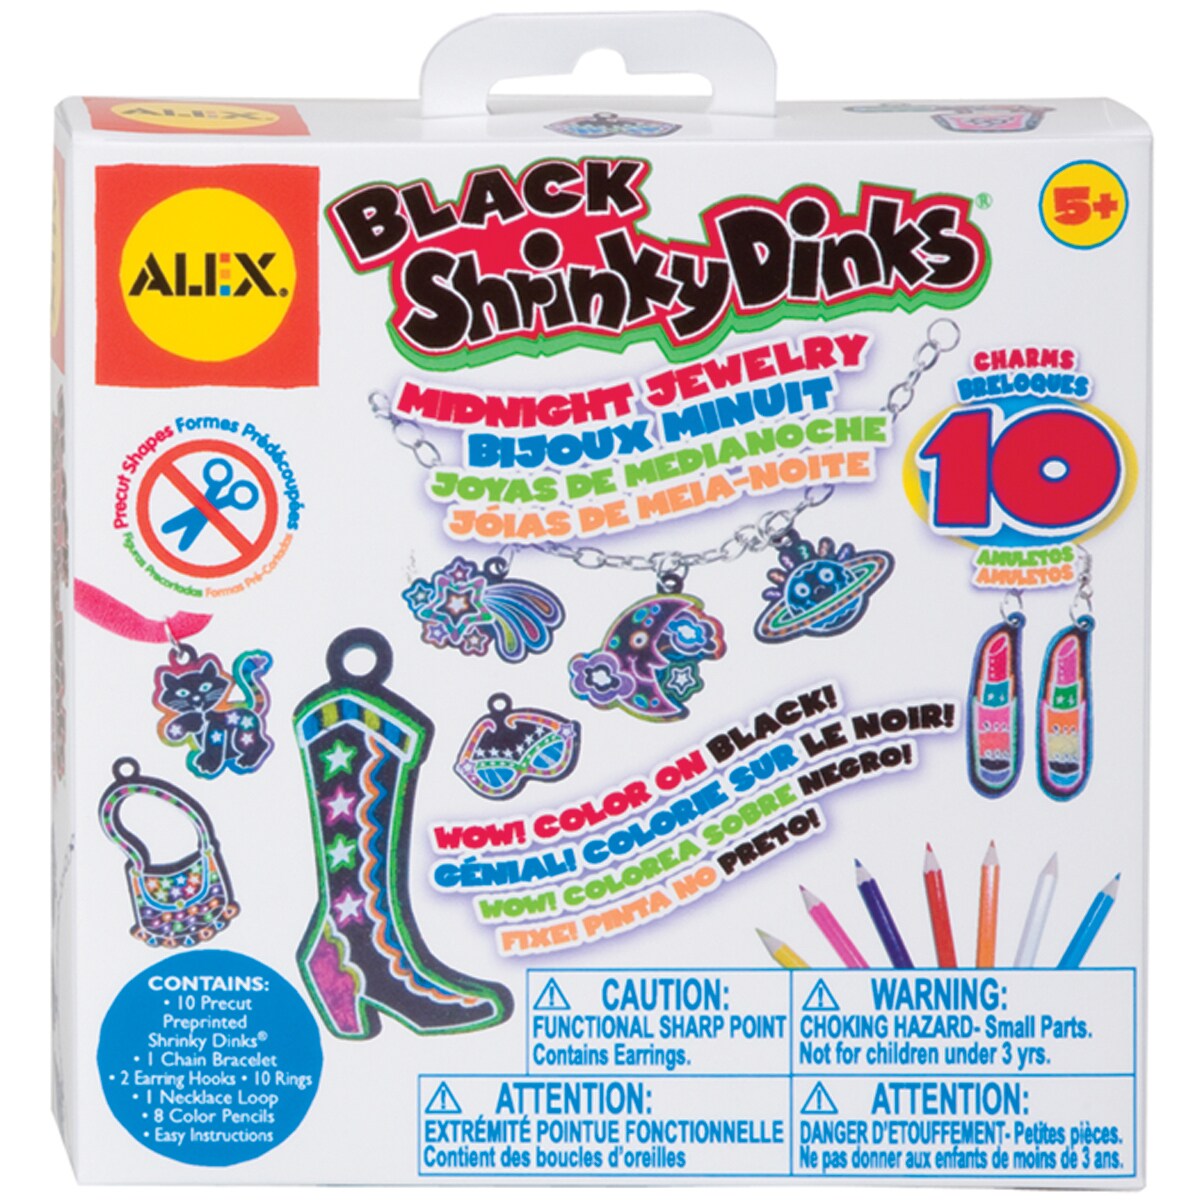 Shrinky Dinks Jewelry - Greenpoint Toys